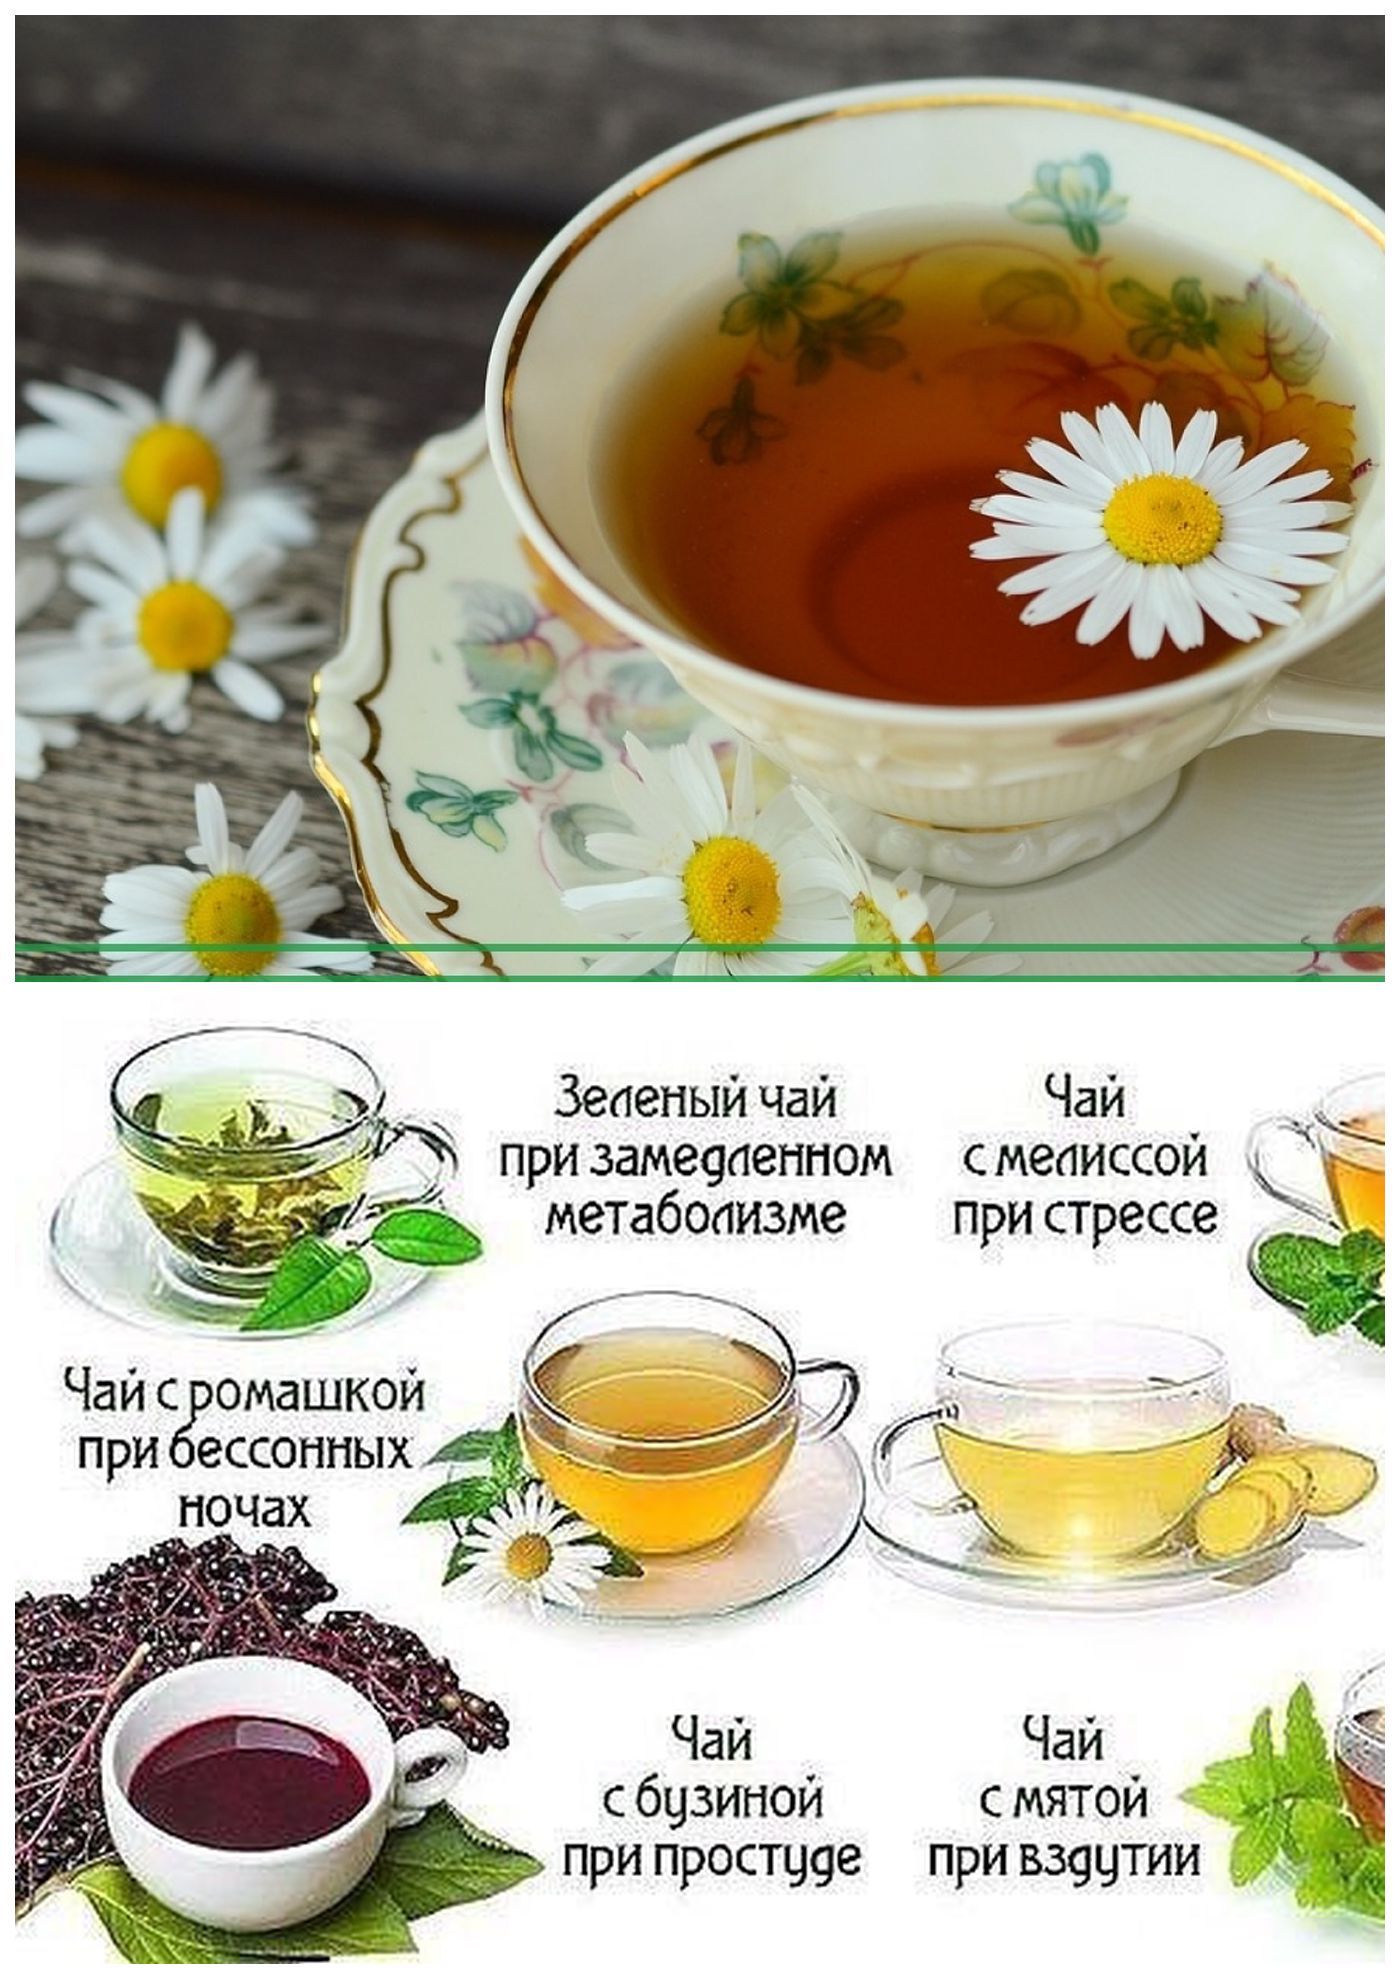 Ромашка вместо чая. Травяной чай. Чай из трав. Травяные чаи рецепты. Рецепты из лекарственных растений.